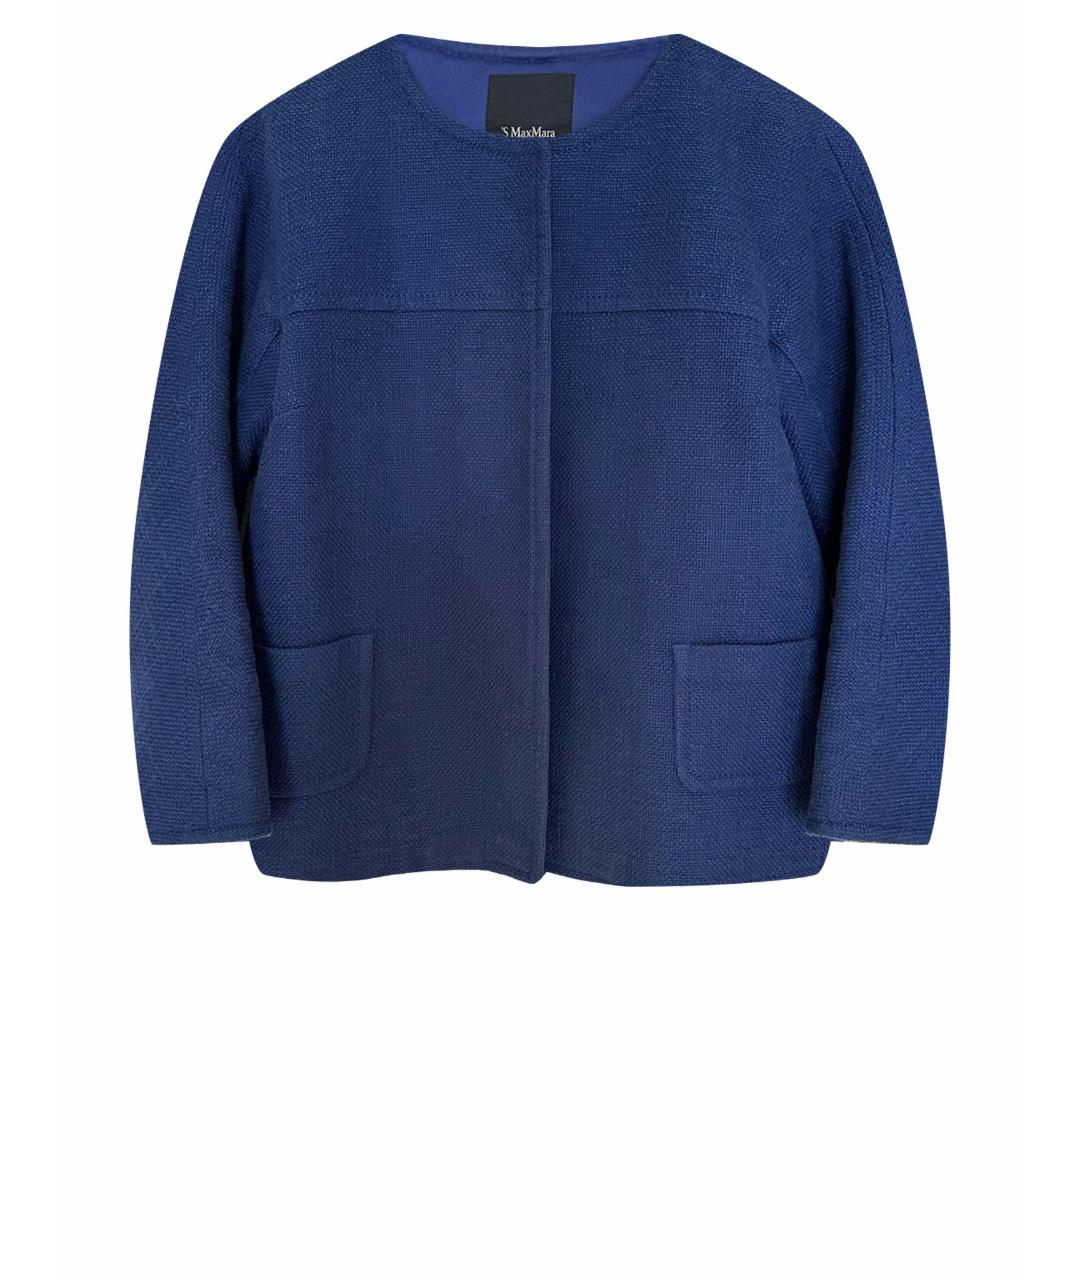 'S MAX MARA Синий хлопковый жакет/пиджак, фото 1